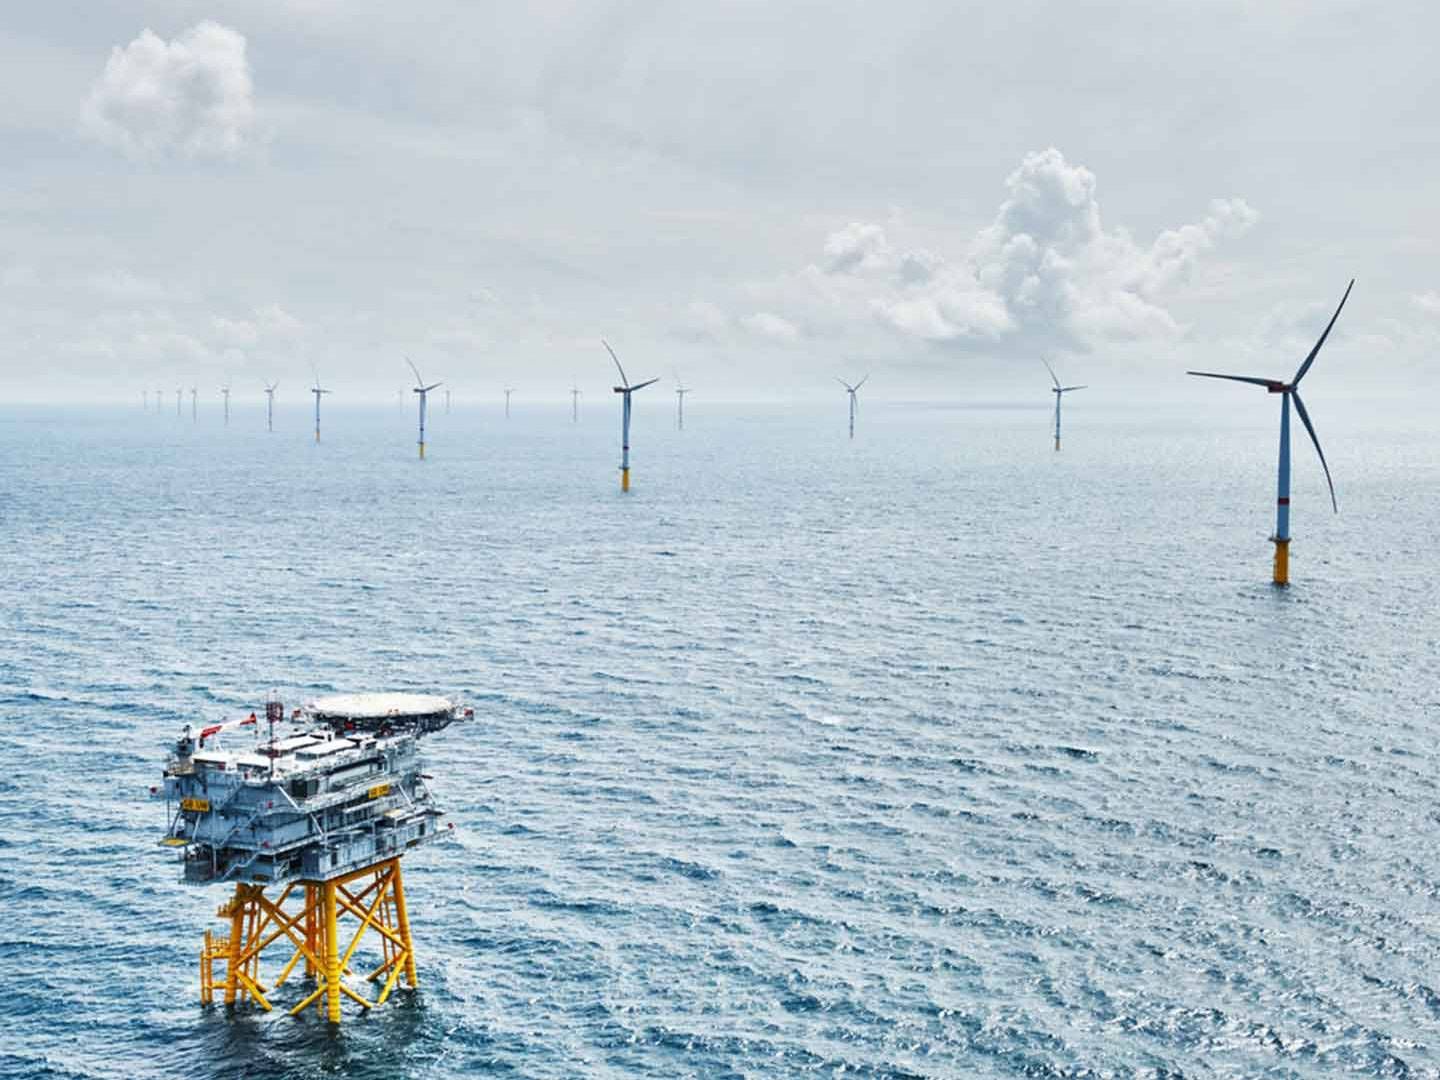 Danmark skal have 50 GW vindmøller på havet, for at blive det første land, der fortrængere mere CO2 i andre lande end vi udleder. Og for at blive førende indenfor fremtidens grønne teknologier, mener Green Power Denmark. | Foto: Vattenfall